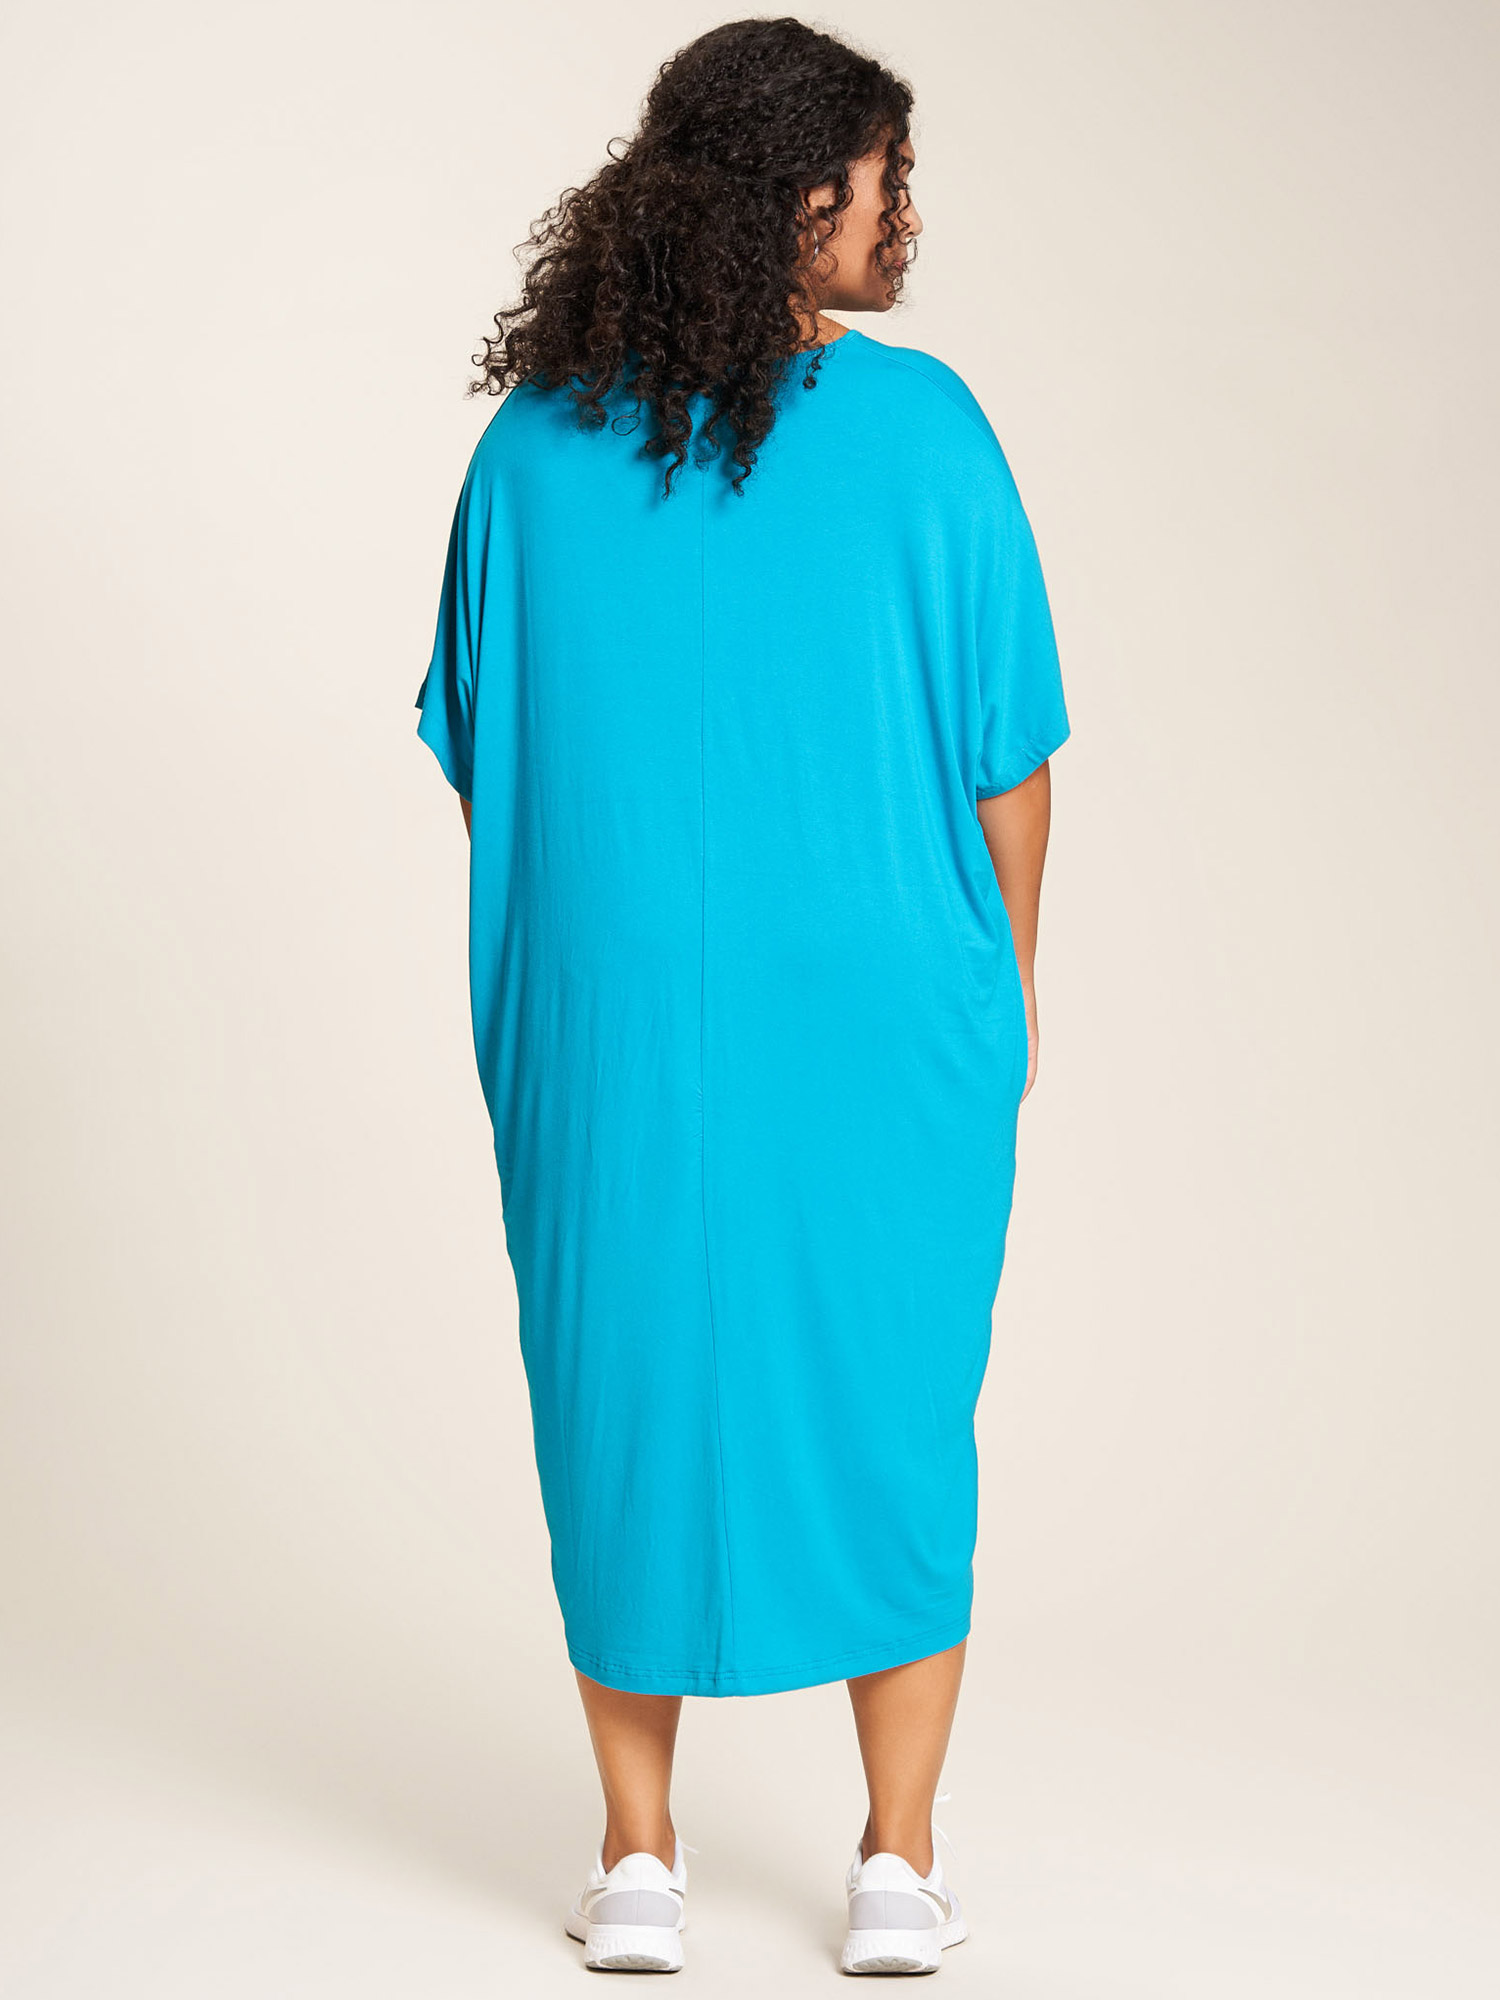 Trine - Lækker turkis kjole i viskose jersey fra Studio